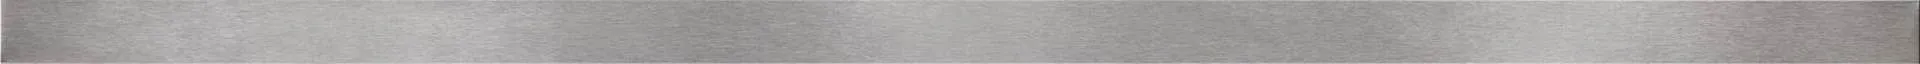 Listwa Bianca metal silver mat border 2x60 Cersanit